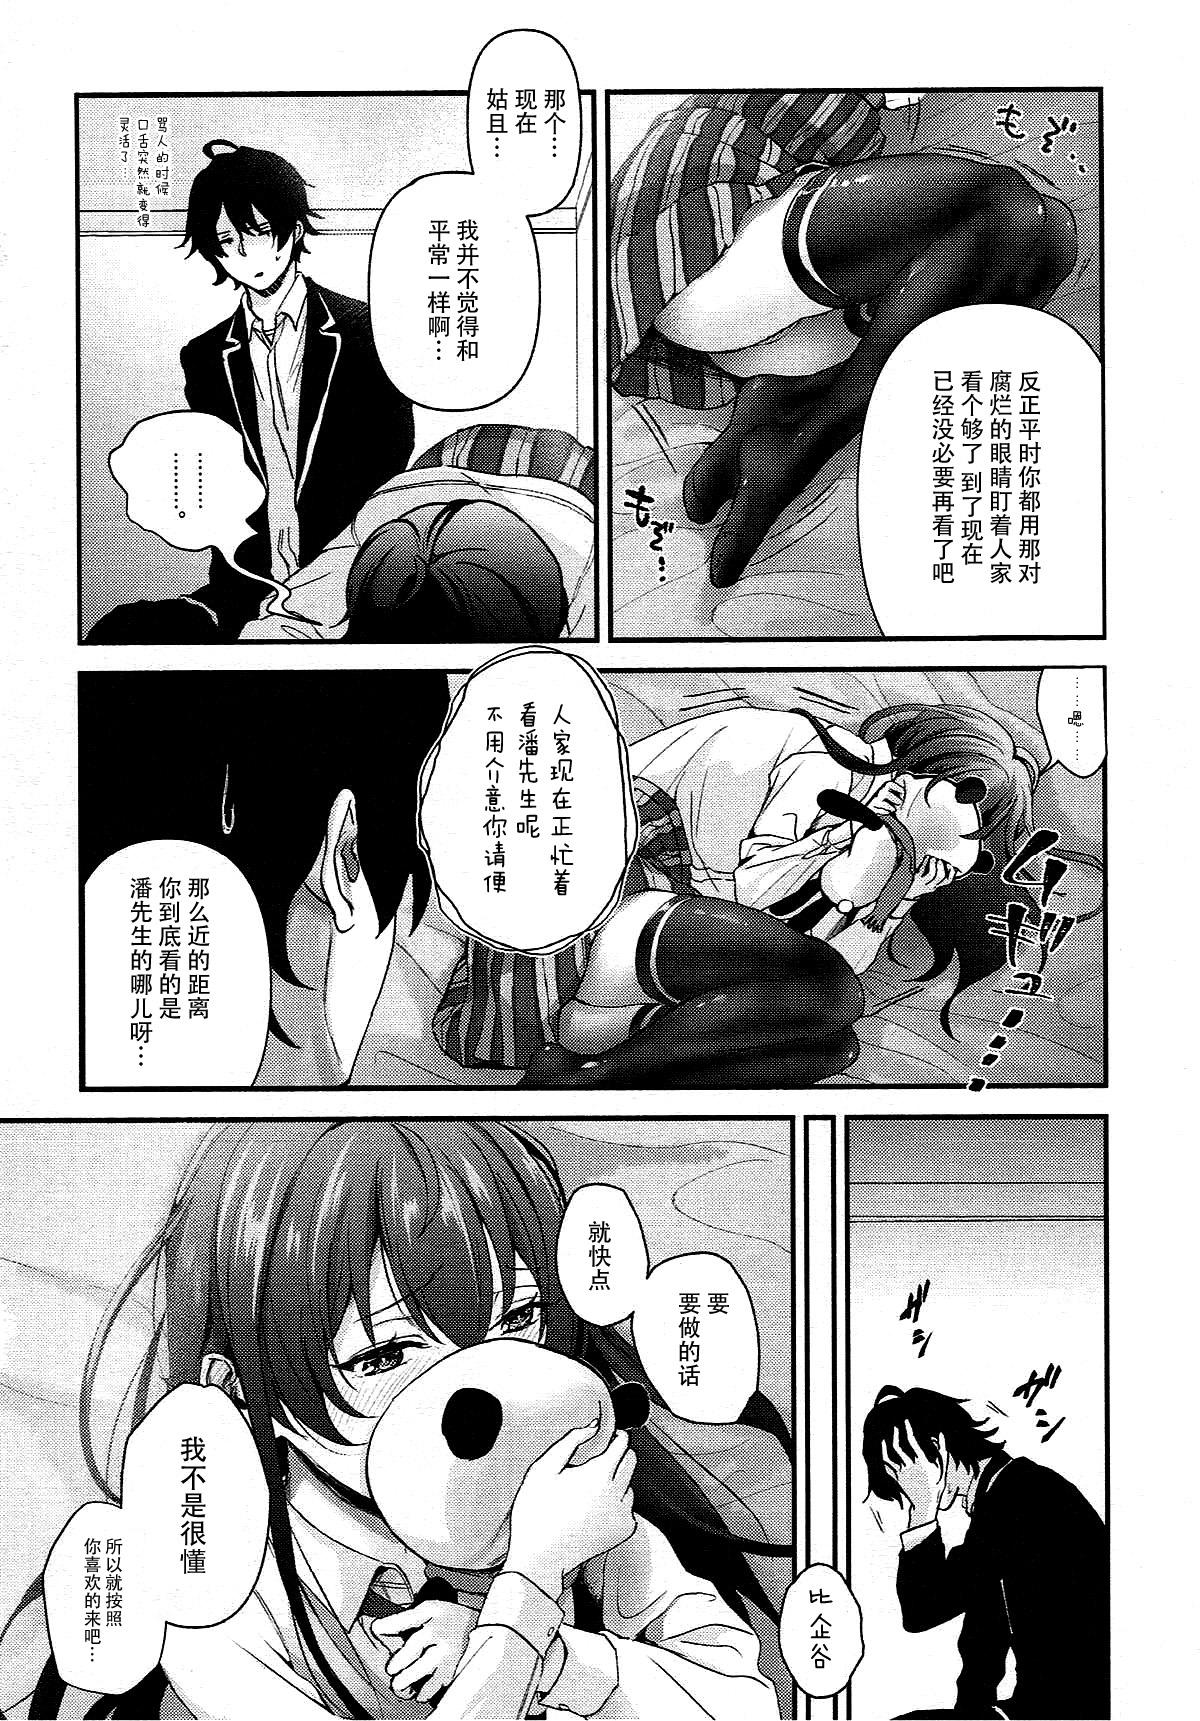 Bubblebutt Yukinohi. - Yahari ore no seishun love come wa machigatteiru Amature Porn - Page 4